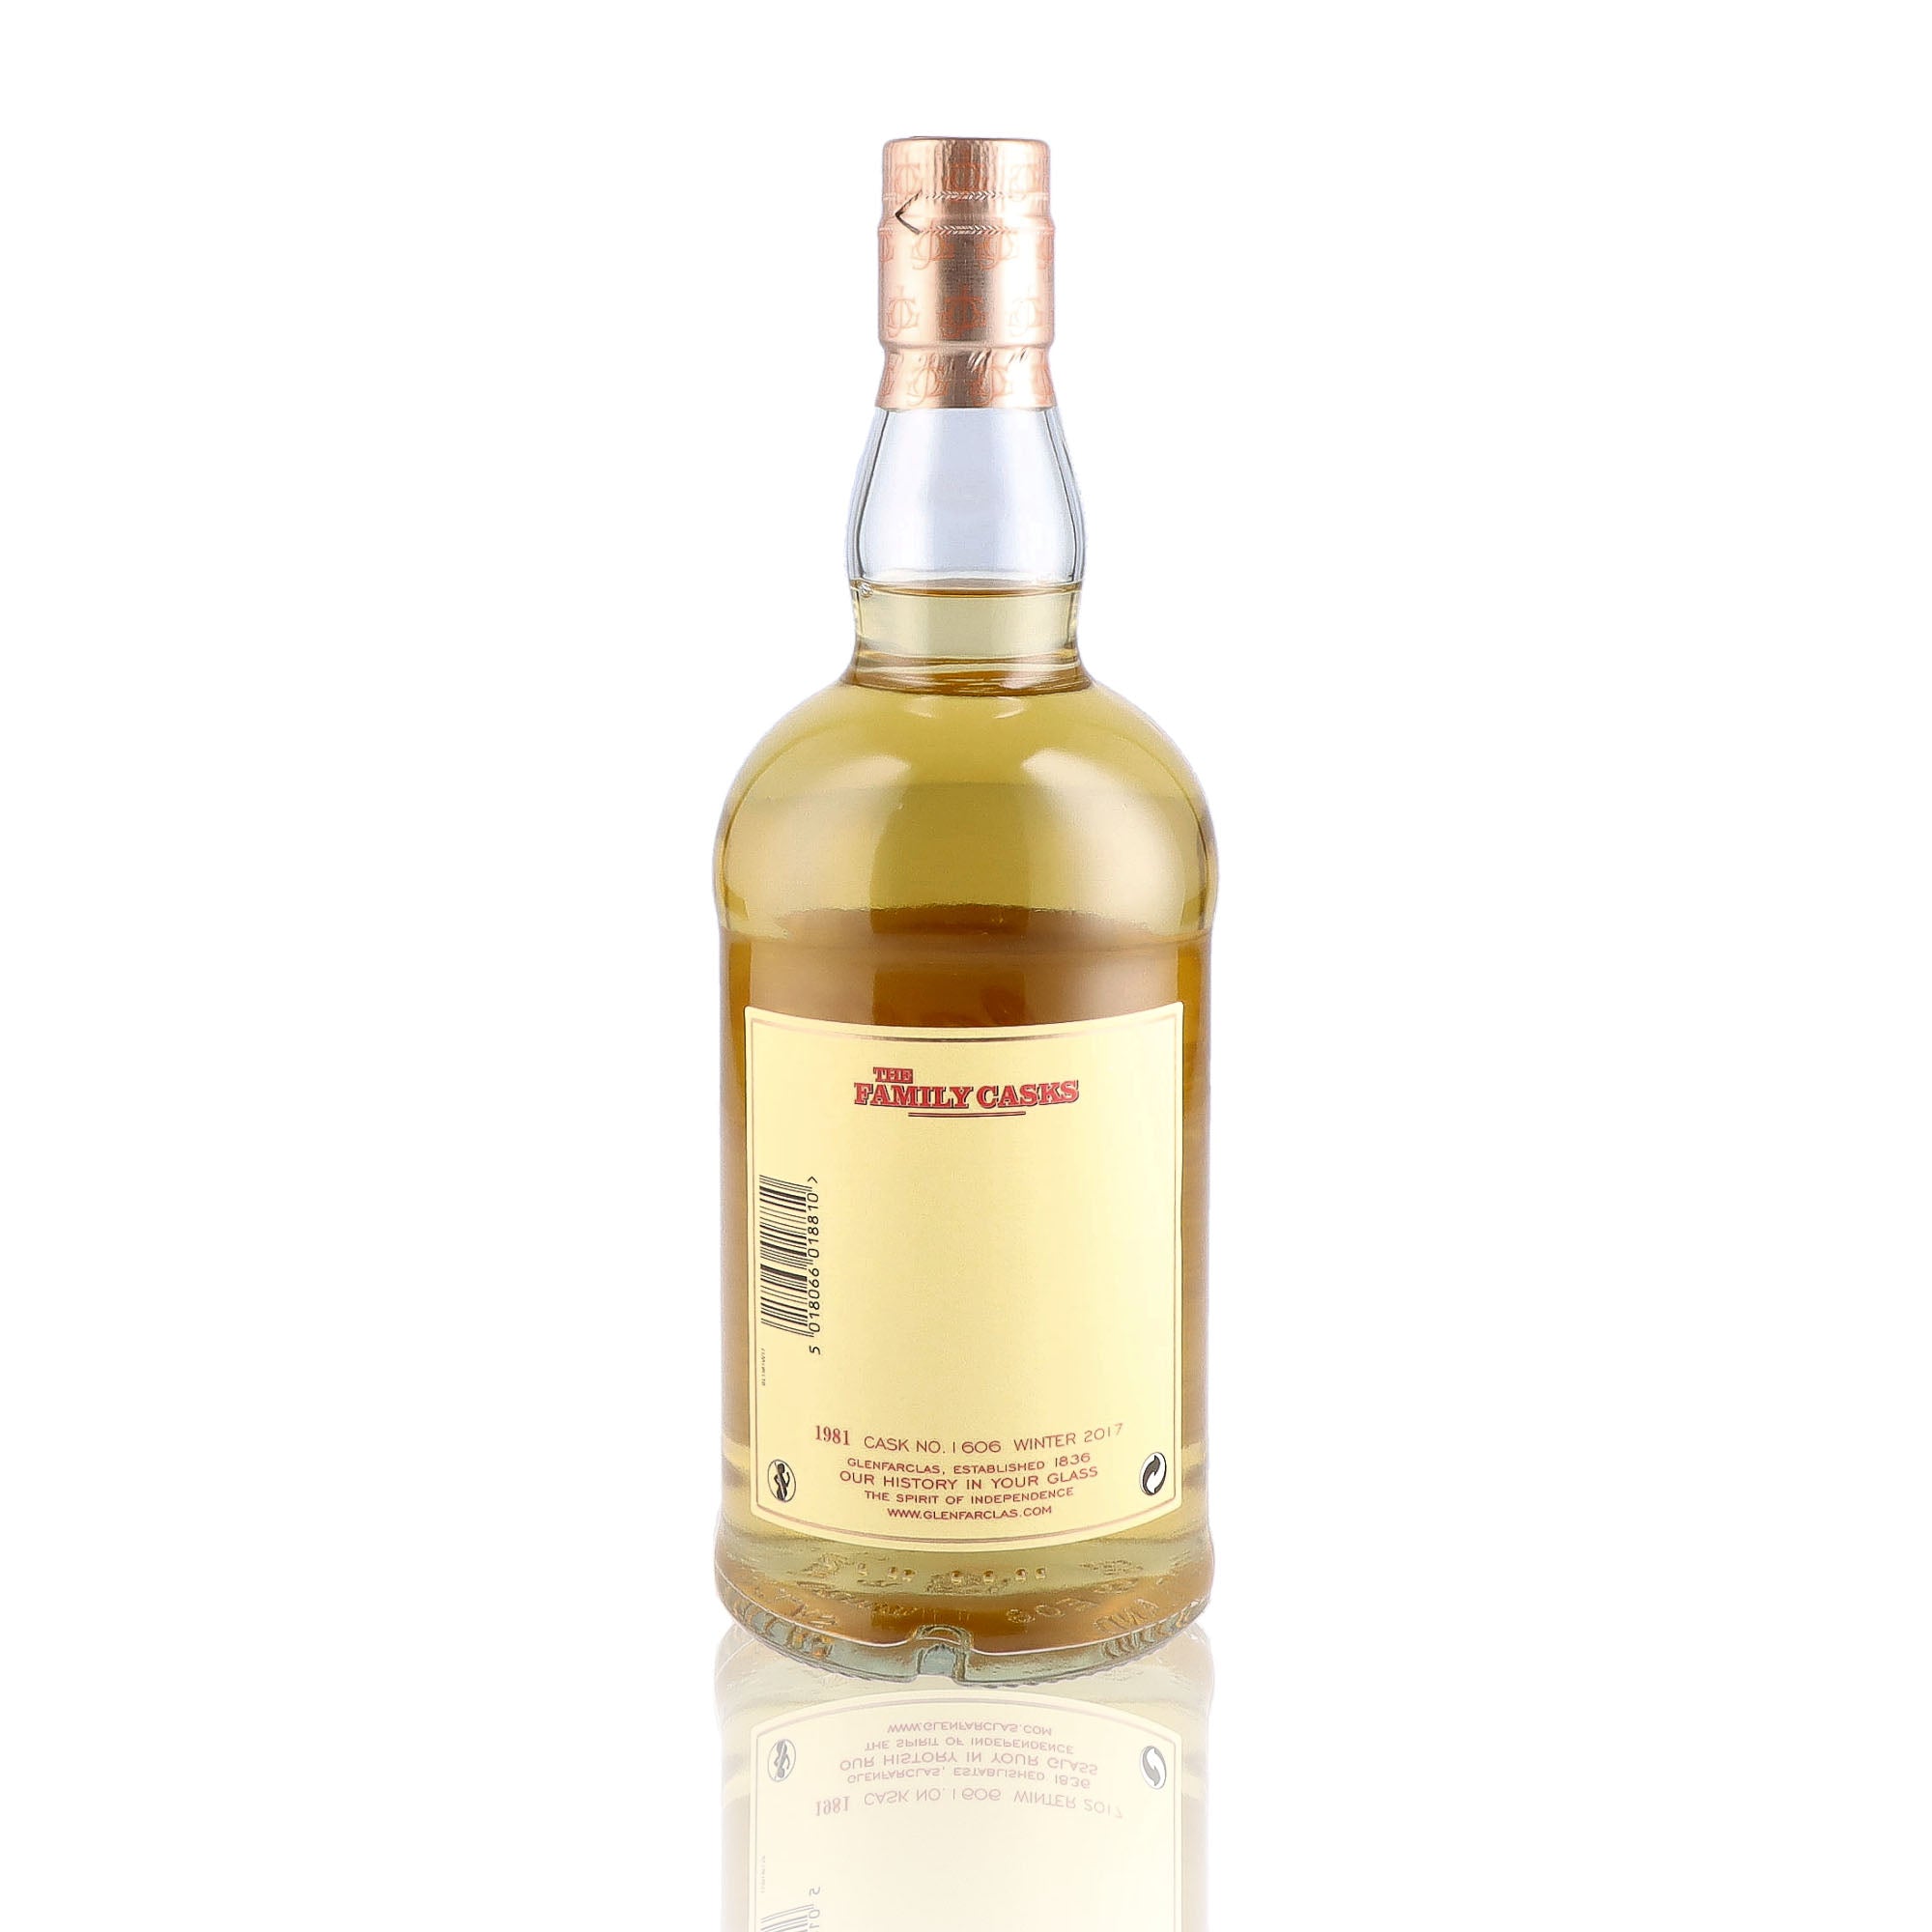 Une bouteille de Scotch Whisky Single Malt de la marque Glenfarclas, nommée The Family Casks, 30 ans d'âge, du millésime 1981.